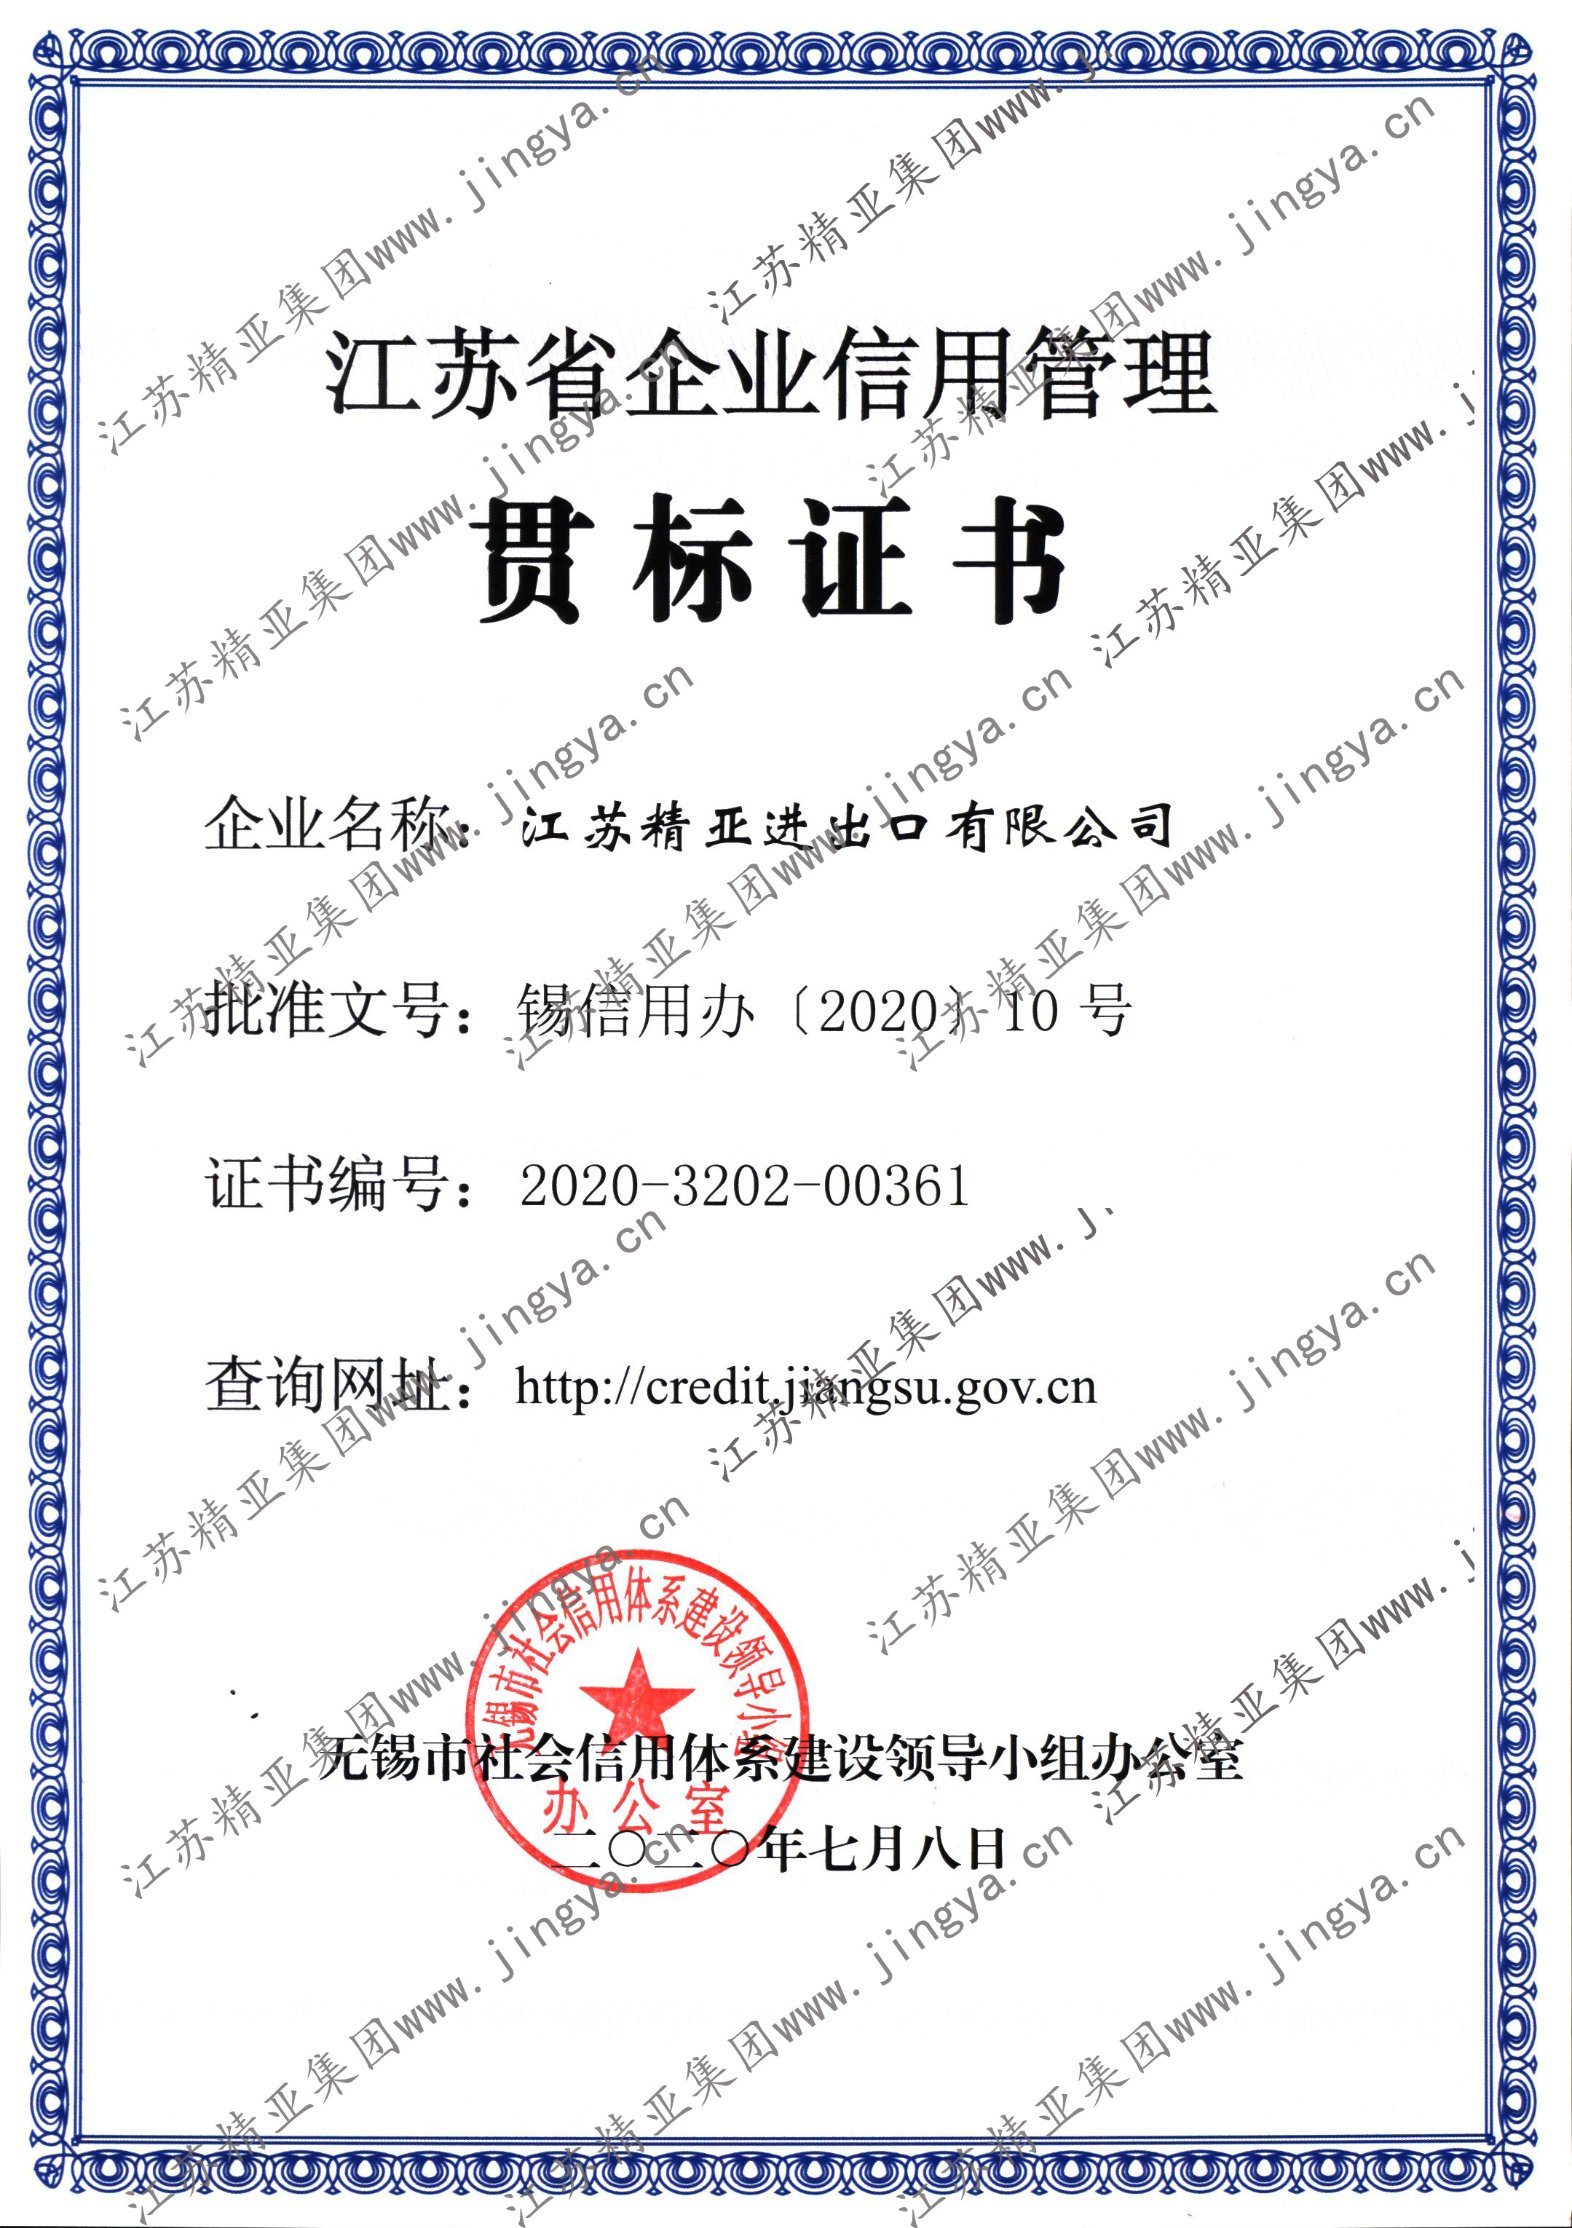 Enterprise Credit Management Standard Implementation Certificate